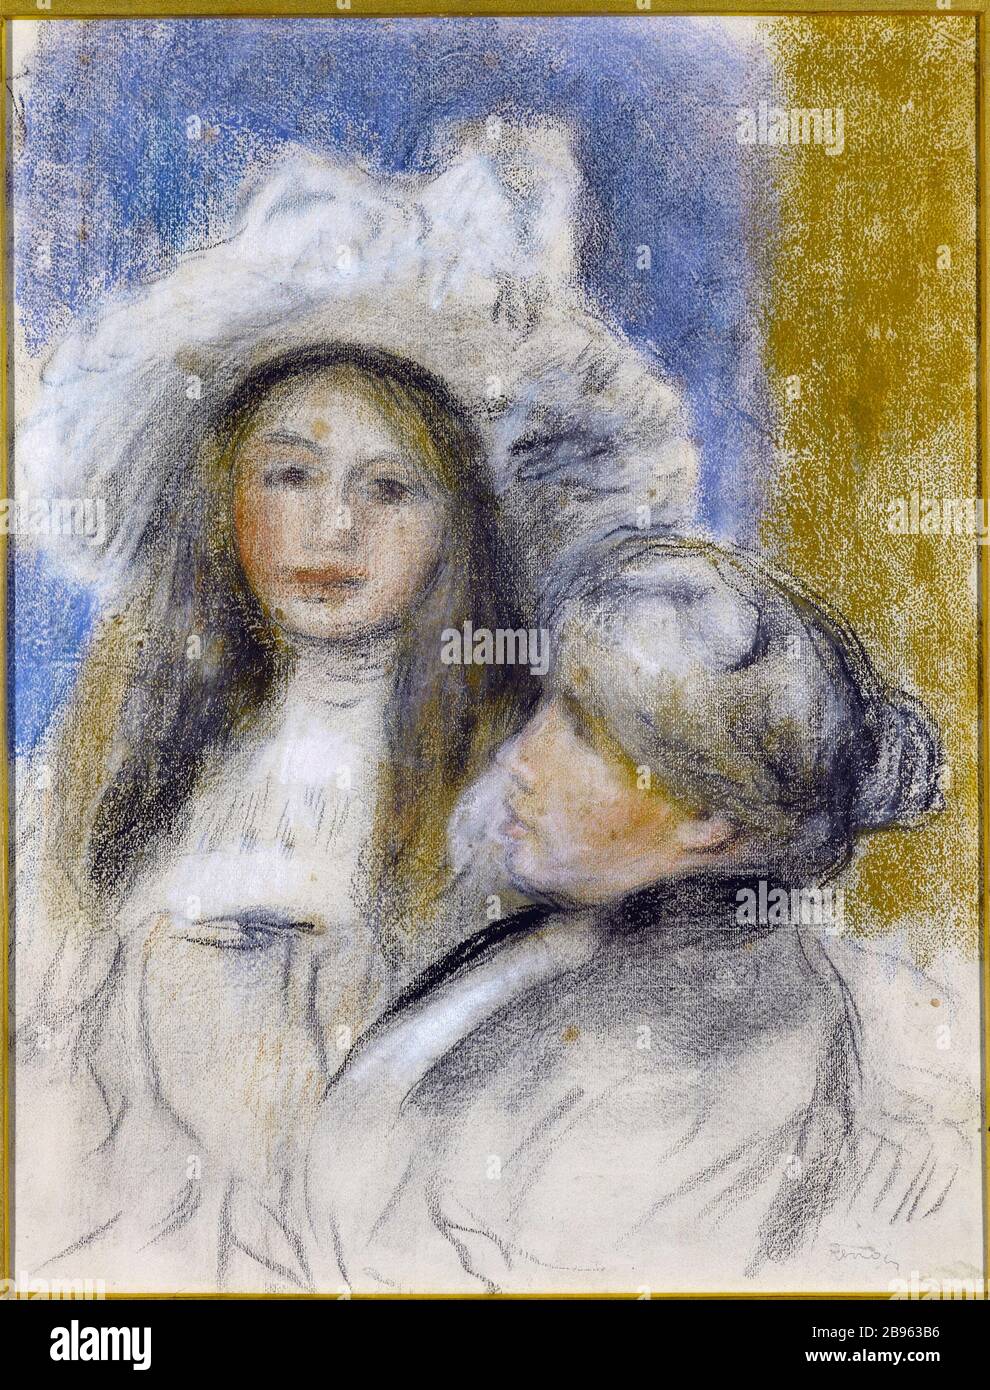 Berthe Morisot und Tochter Auguste-Renoir (1844-1919). "Berthe Morisot et sa fille". Pastell, 1908. Musée des Beaux-Arts de la Ville de Paris, Petit Palais. Stockfoto